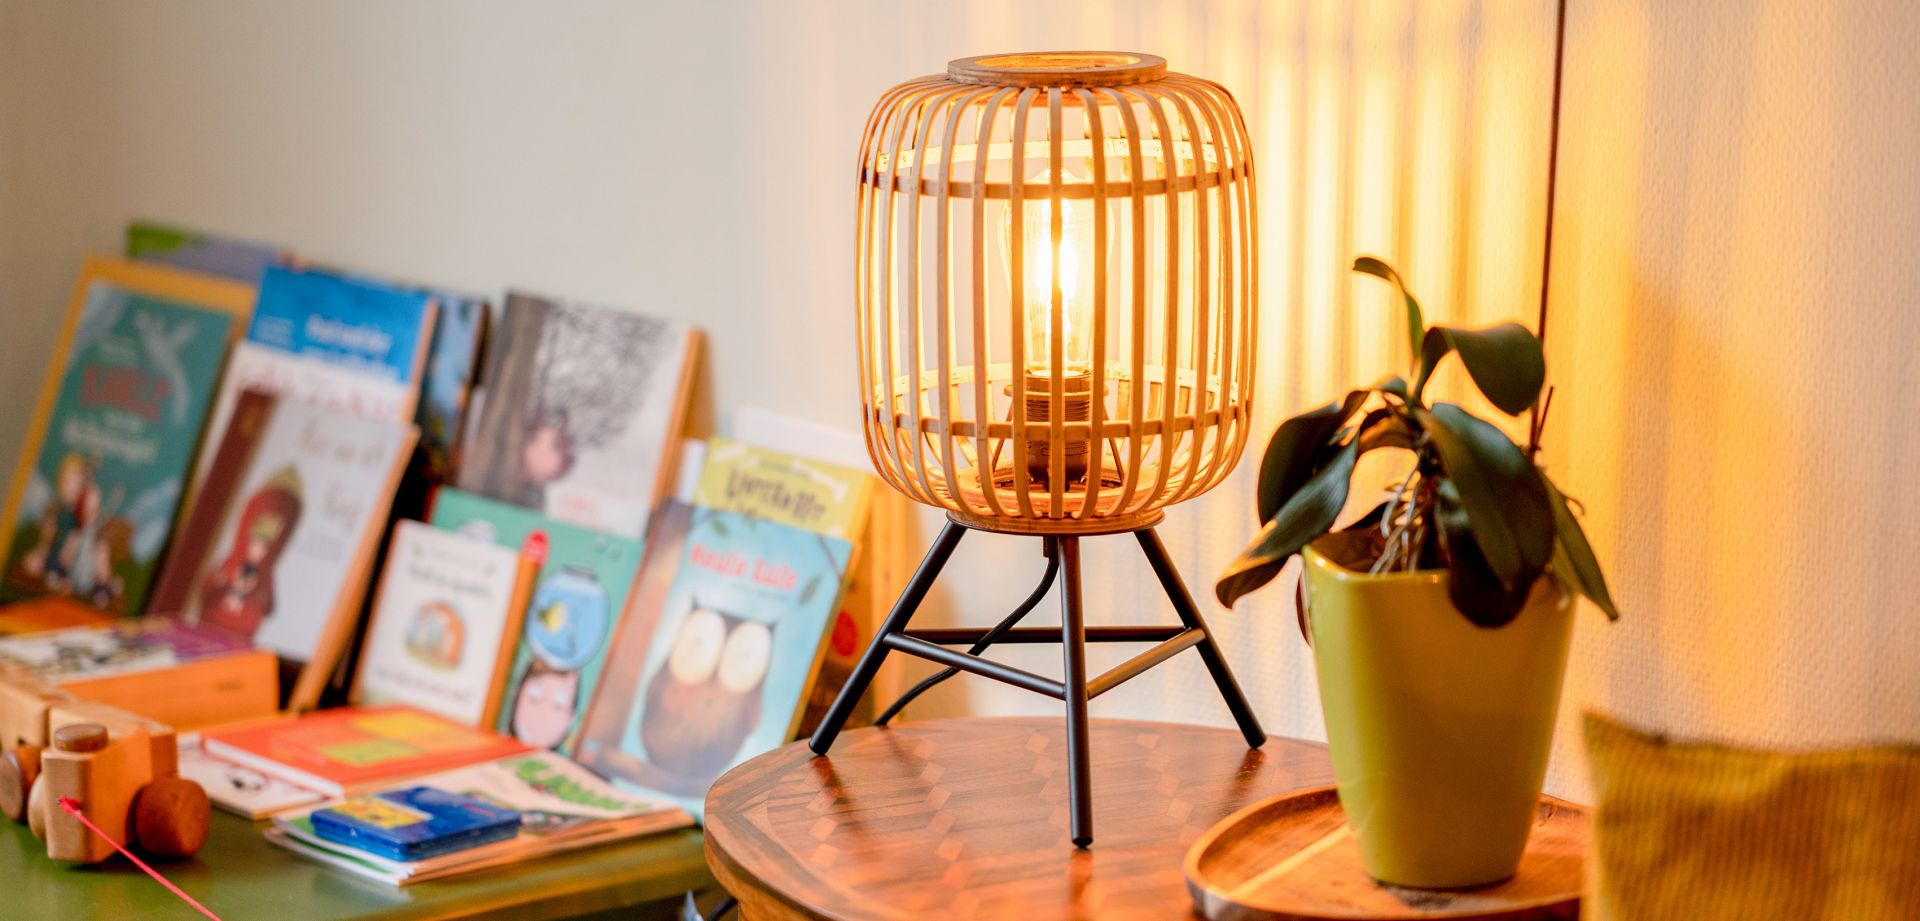 Foto einer Lampe sowie einer Pflanze und verschiedenen Büchern im Hintergrund.